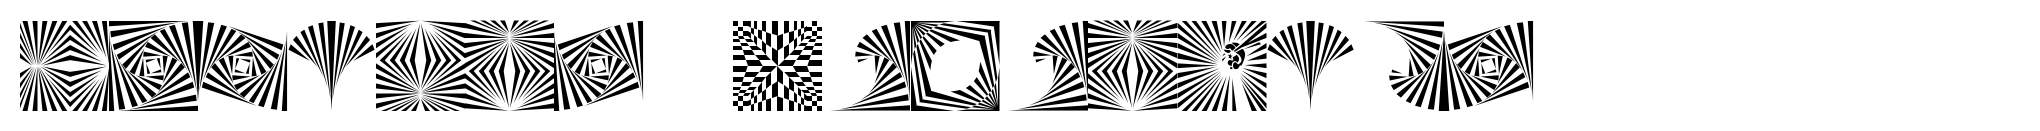 Cubista Geometrica image